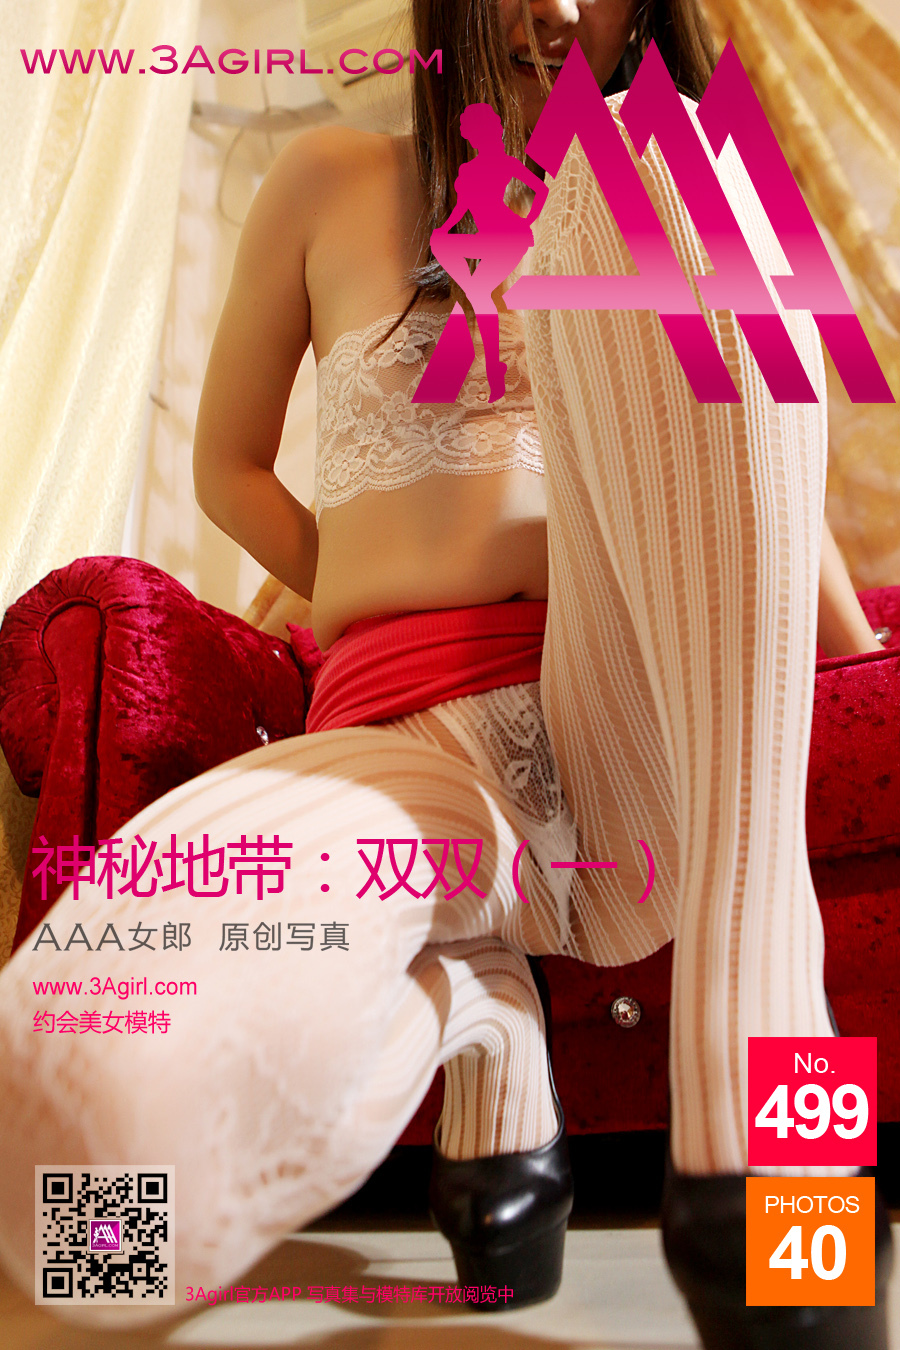 [3agirl] 2015.10.24 No.499 AAA Girl Mystery zone: Shuangshuang (1)